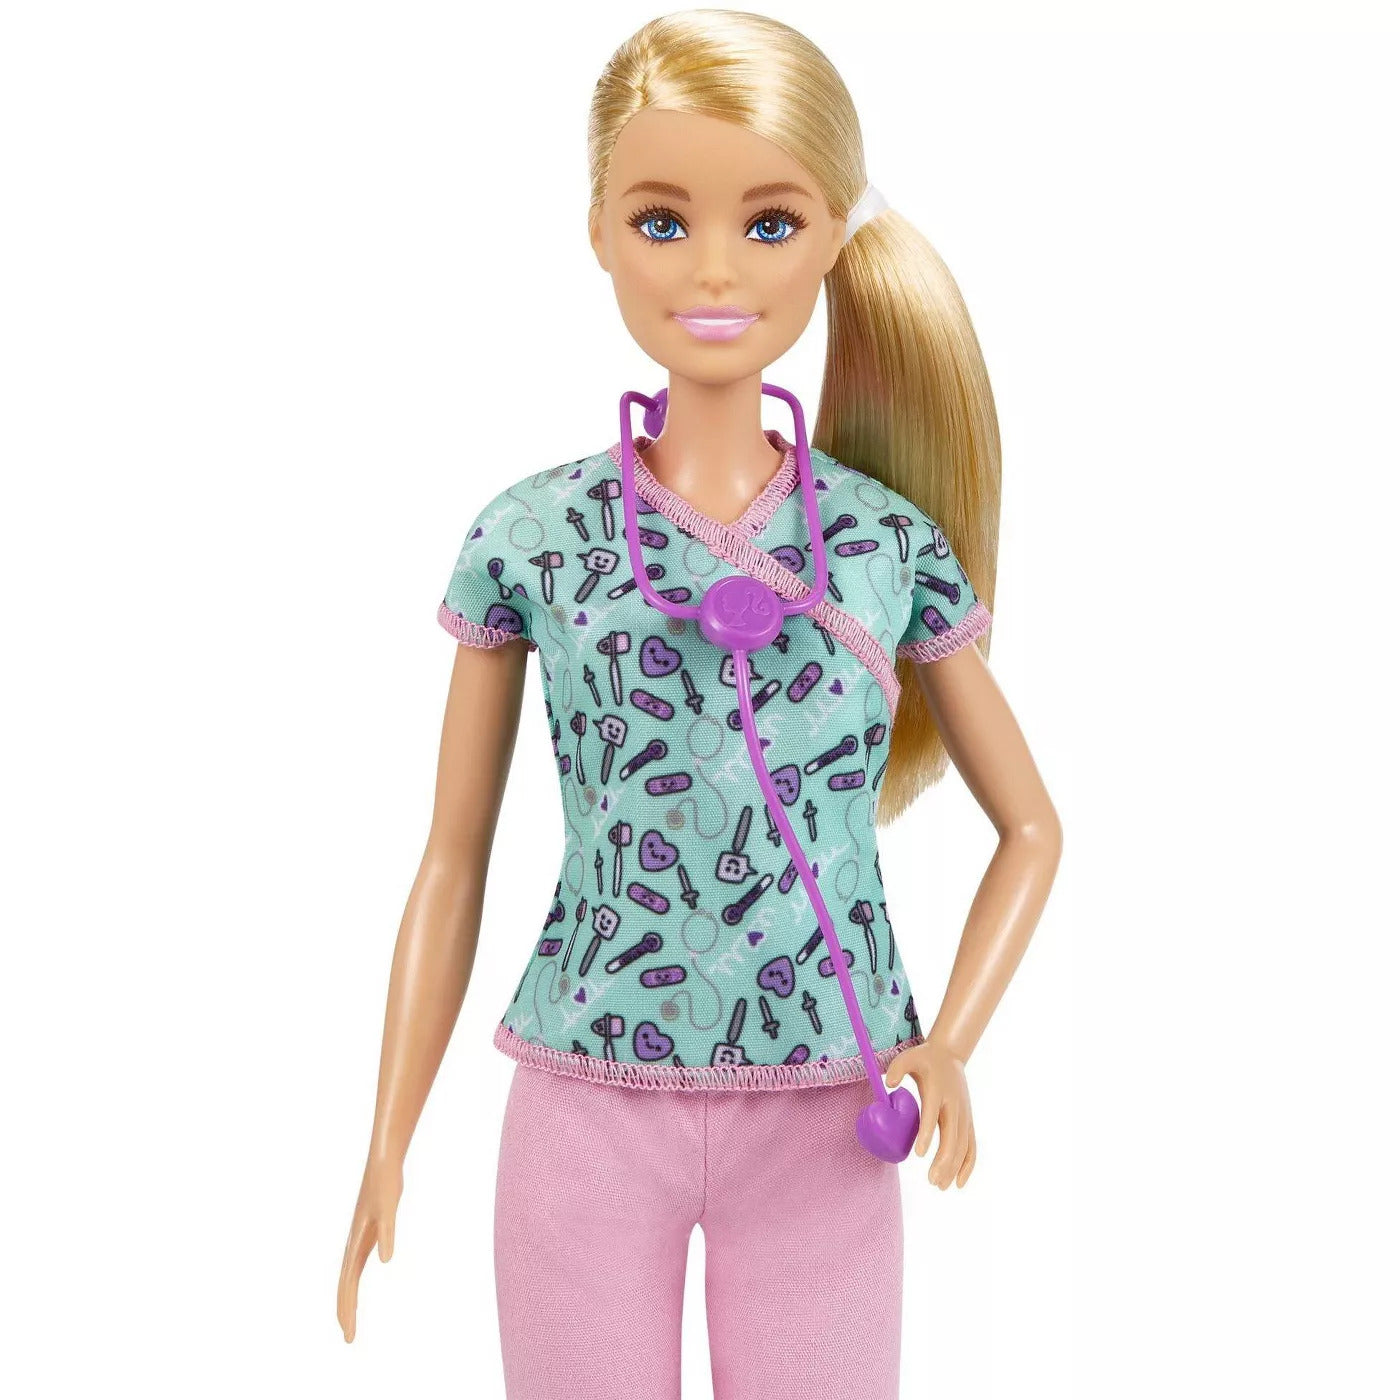 Barbie Career Doll - Nurse